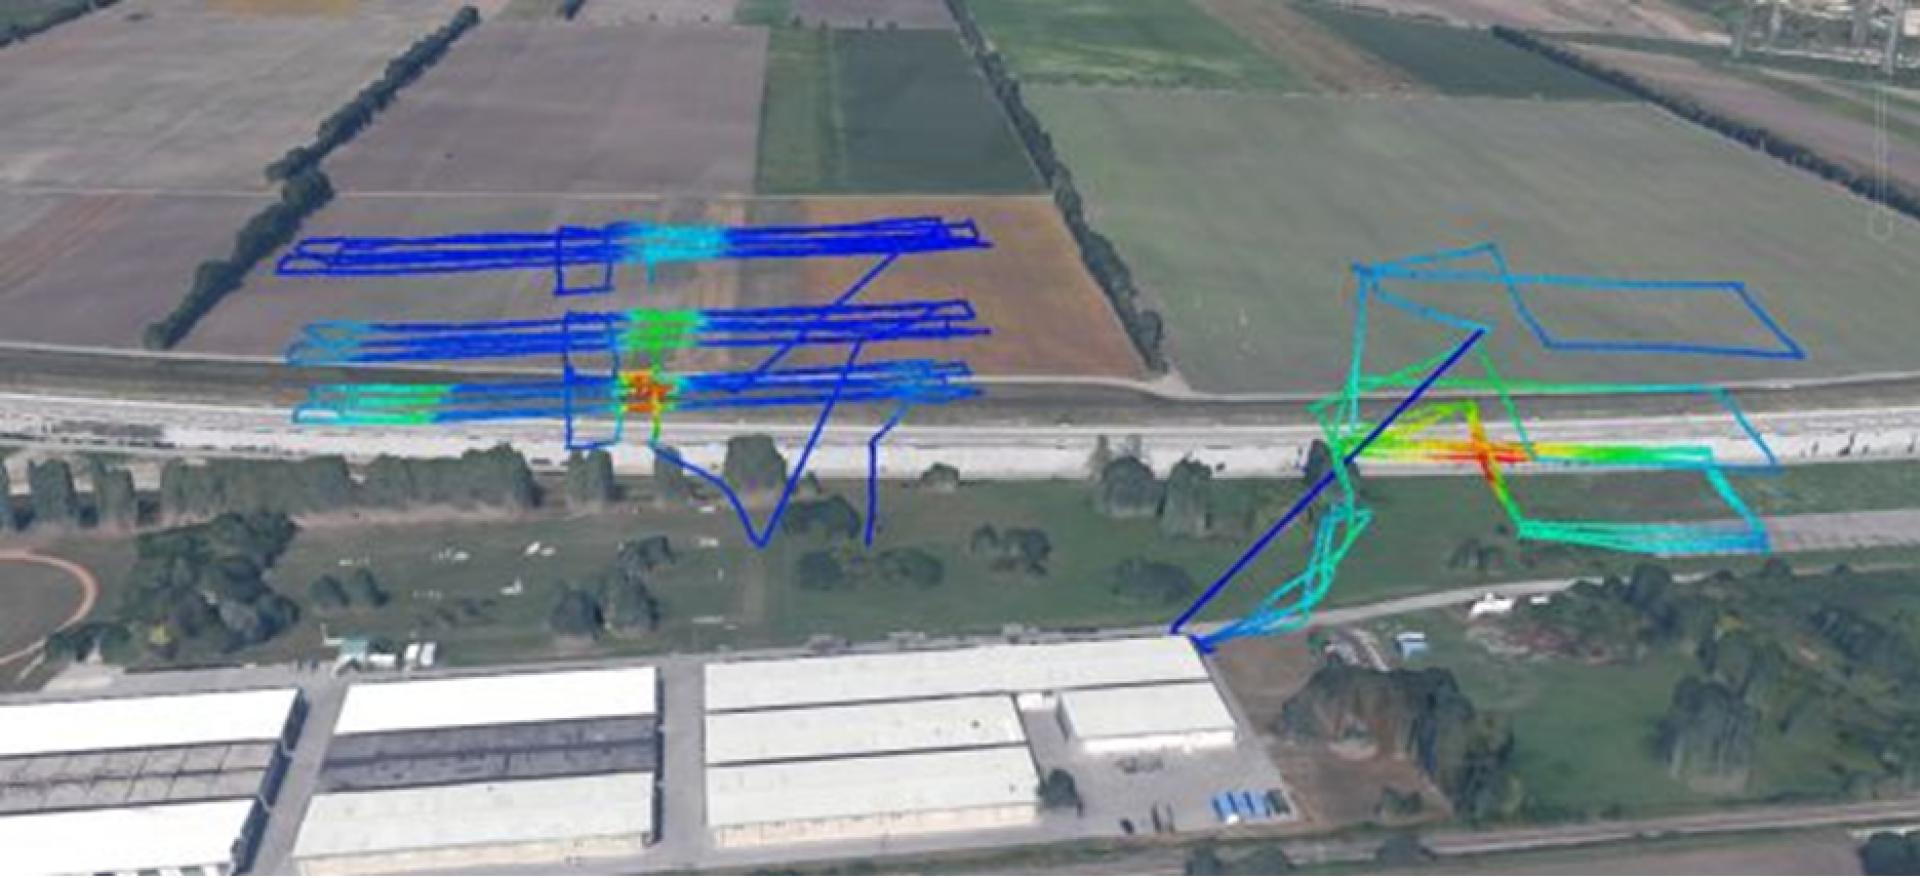 Trayectoria del UAV indicada con colores según la intensidad de la radioactividad